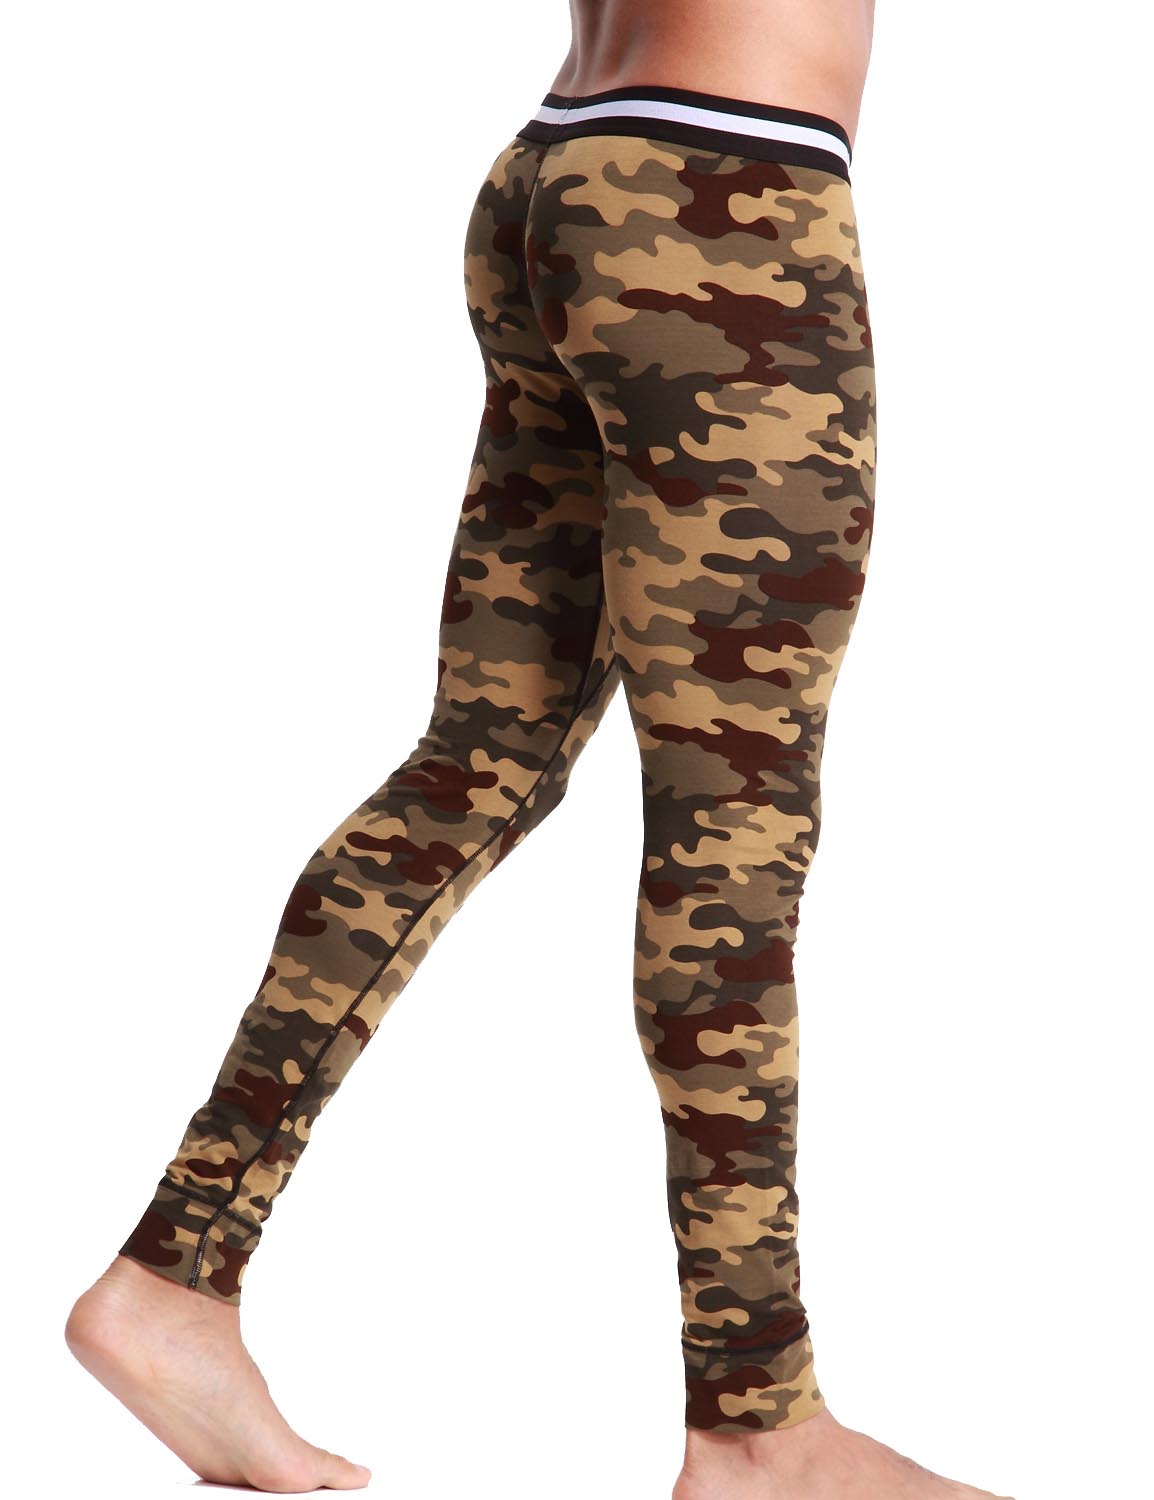 Low Rise Long Underwear Camouflage Long John 50401